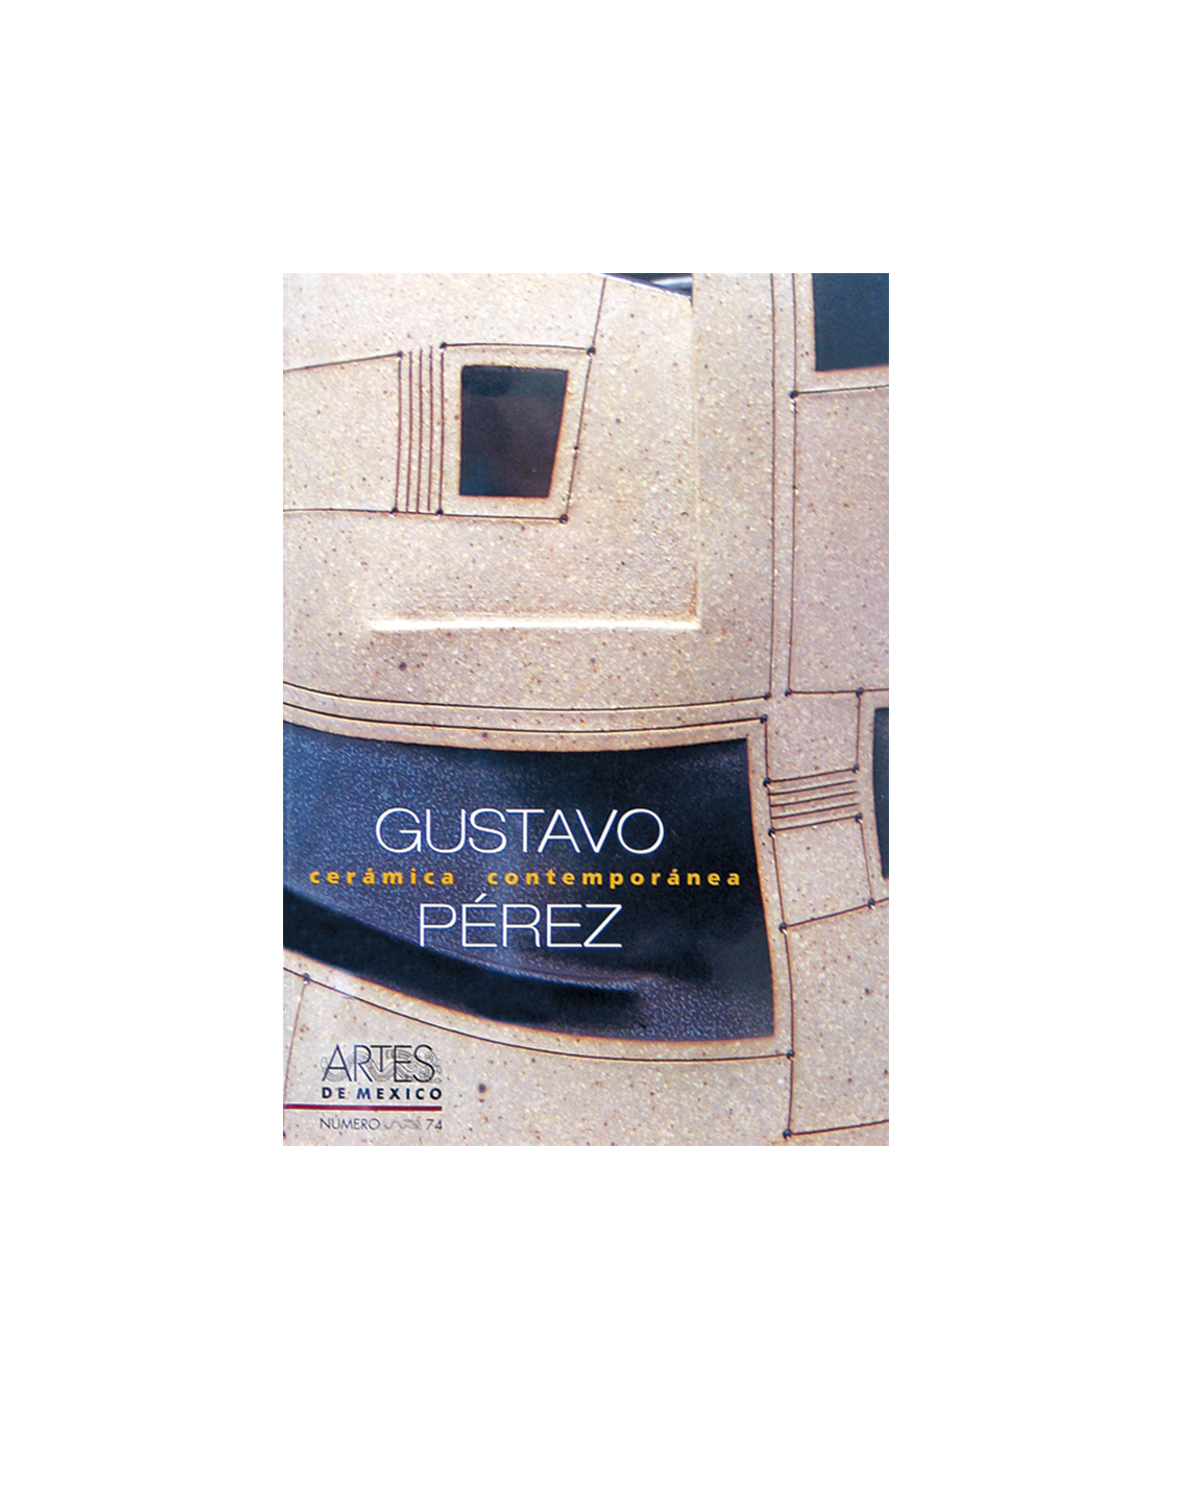 GUSTAVO PEREZ, CERAMICA CONTEMPORANEA, NO. 74